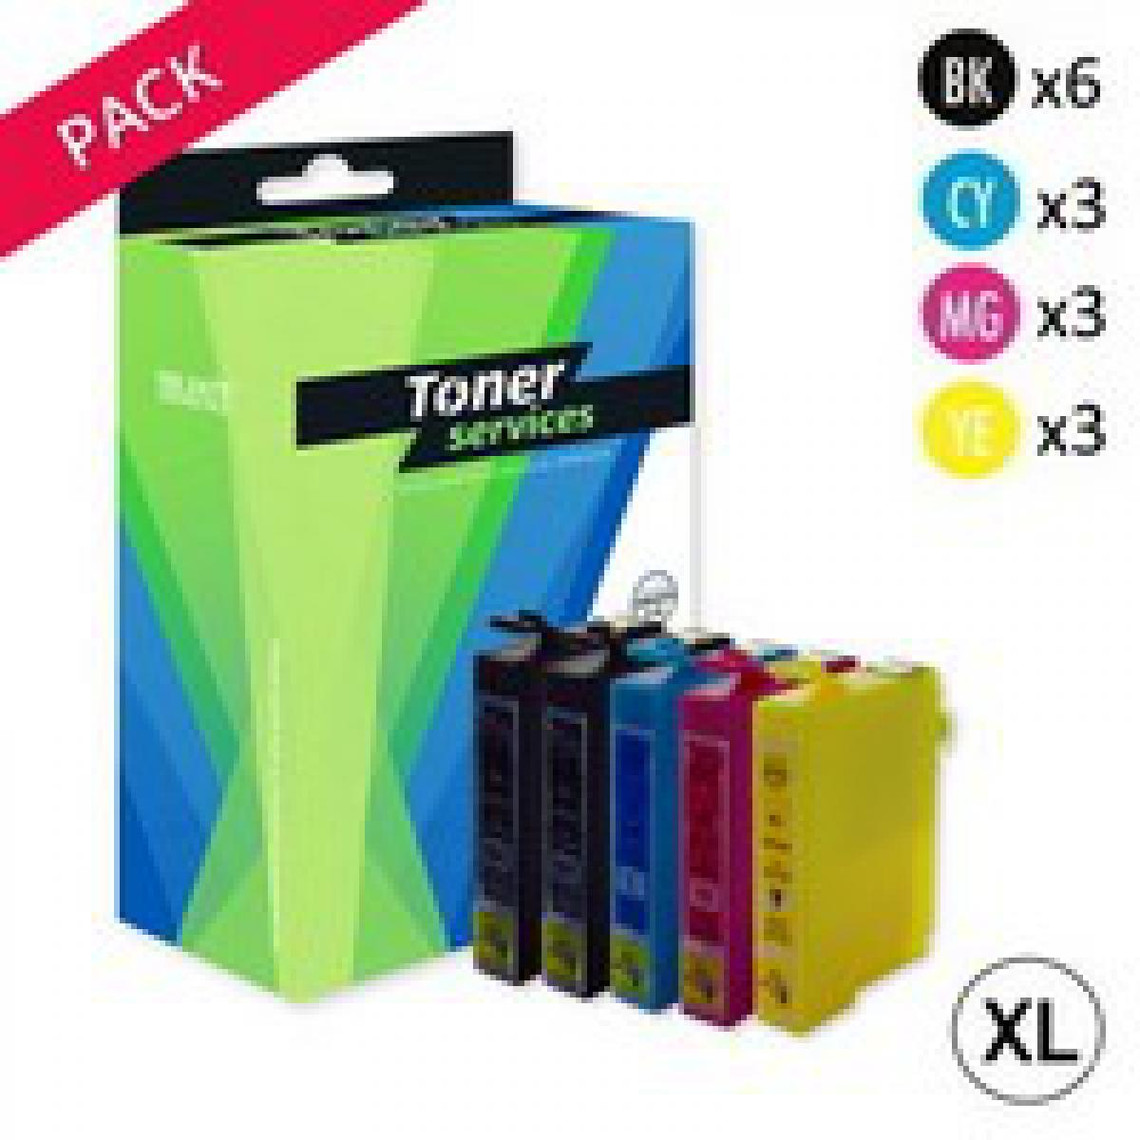 Toner Services Pack 15 Cartouches équivalent à Epson 29XL Fraise 6 noires/12 couleurs (C13T29964010) Toner Services